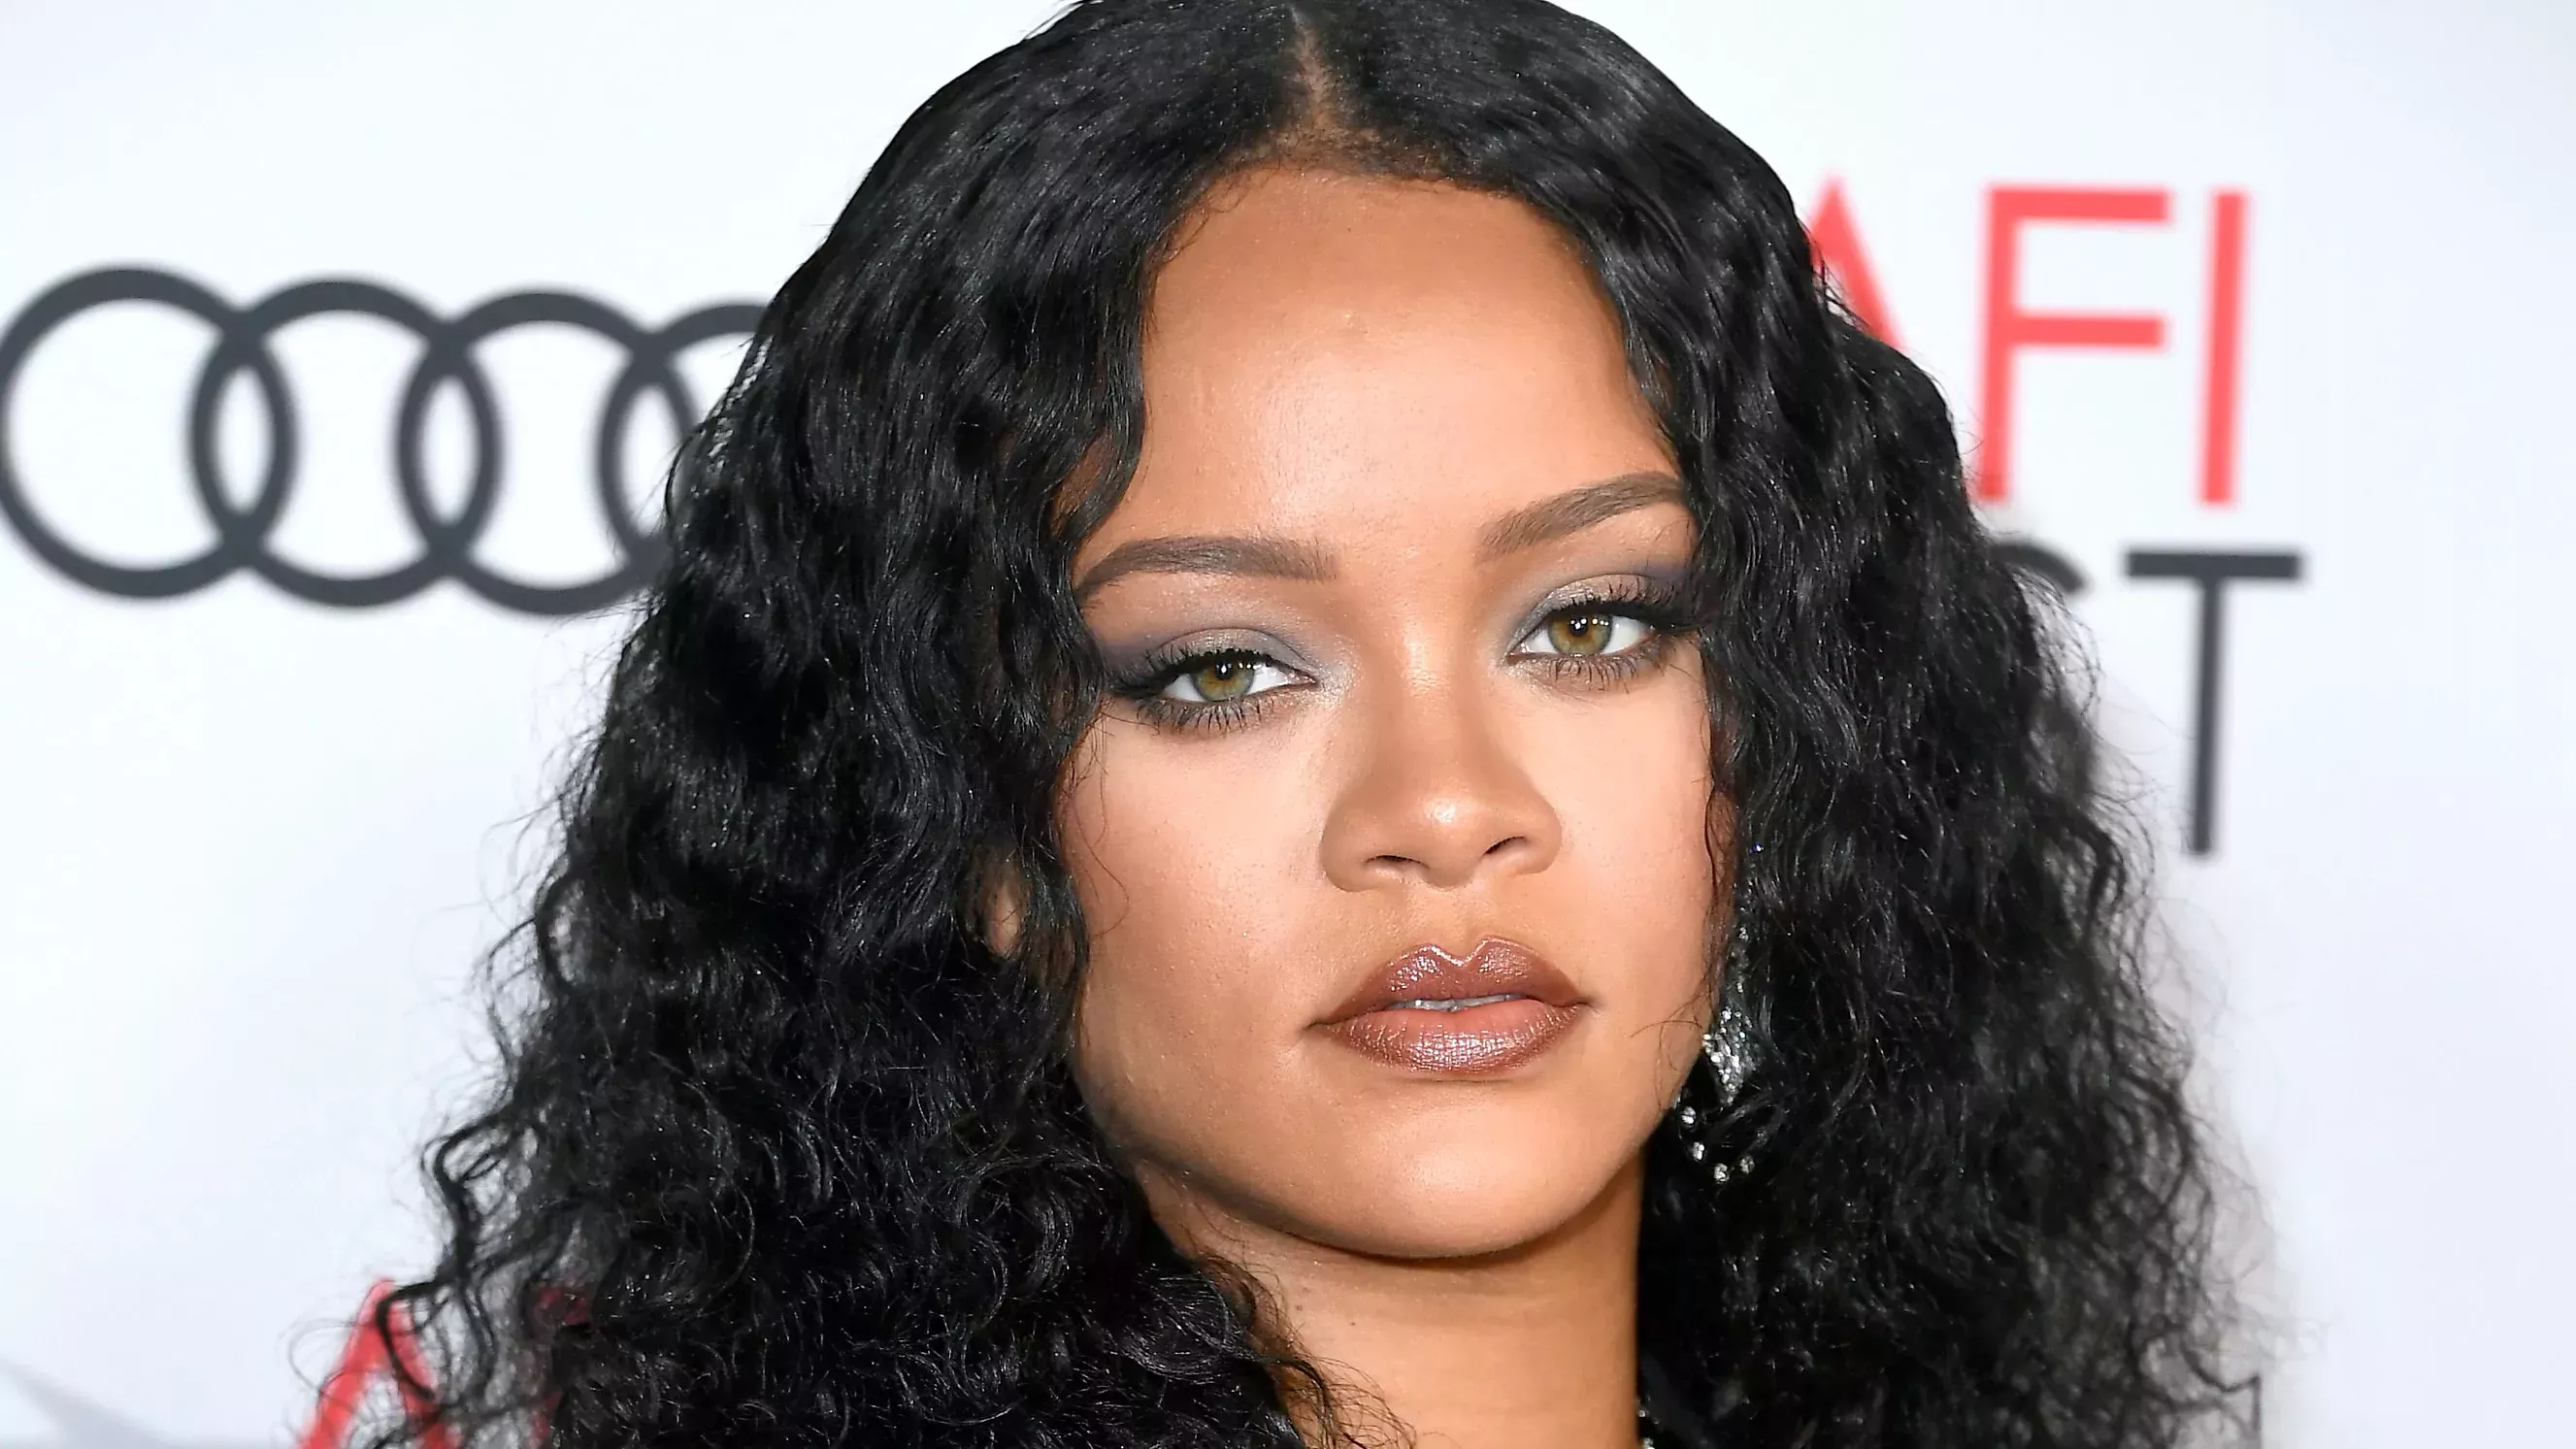 Necesitas esta vista de 360 grados del peinado de Rihanna en los Globos de Oro